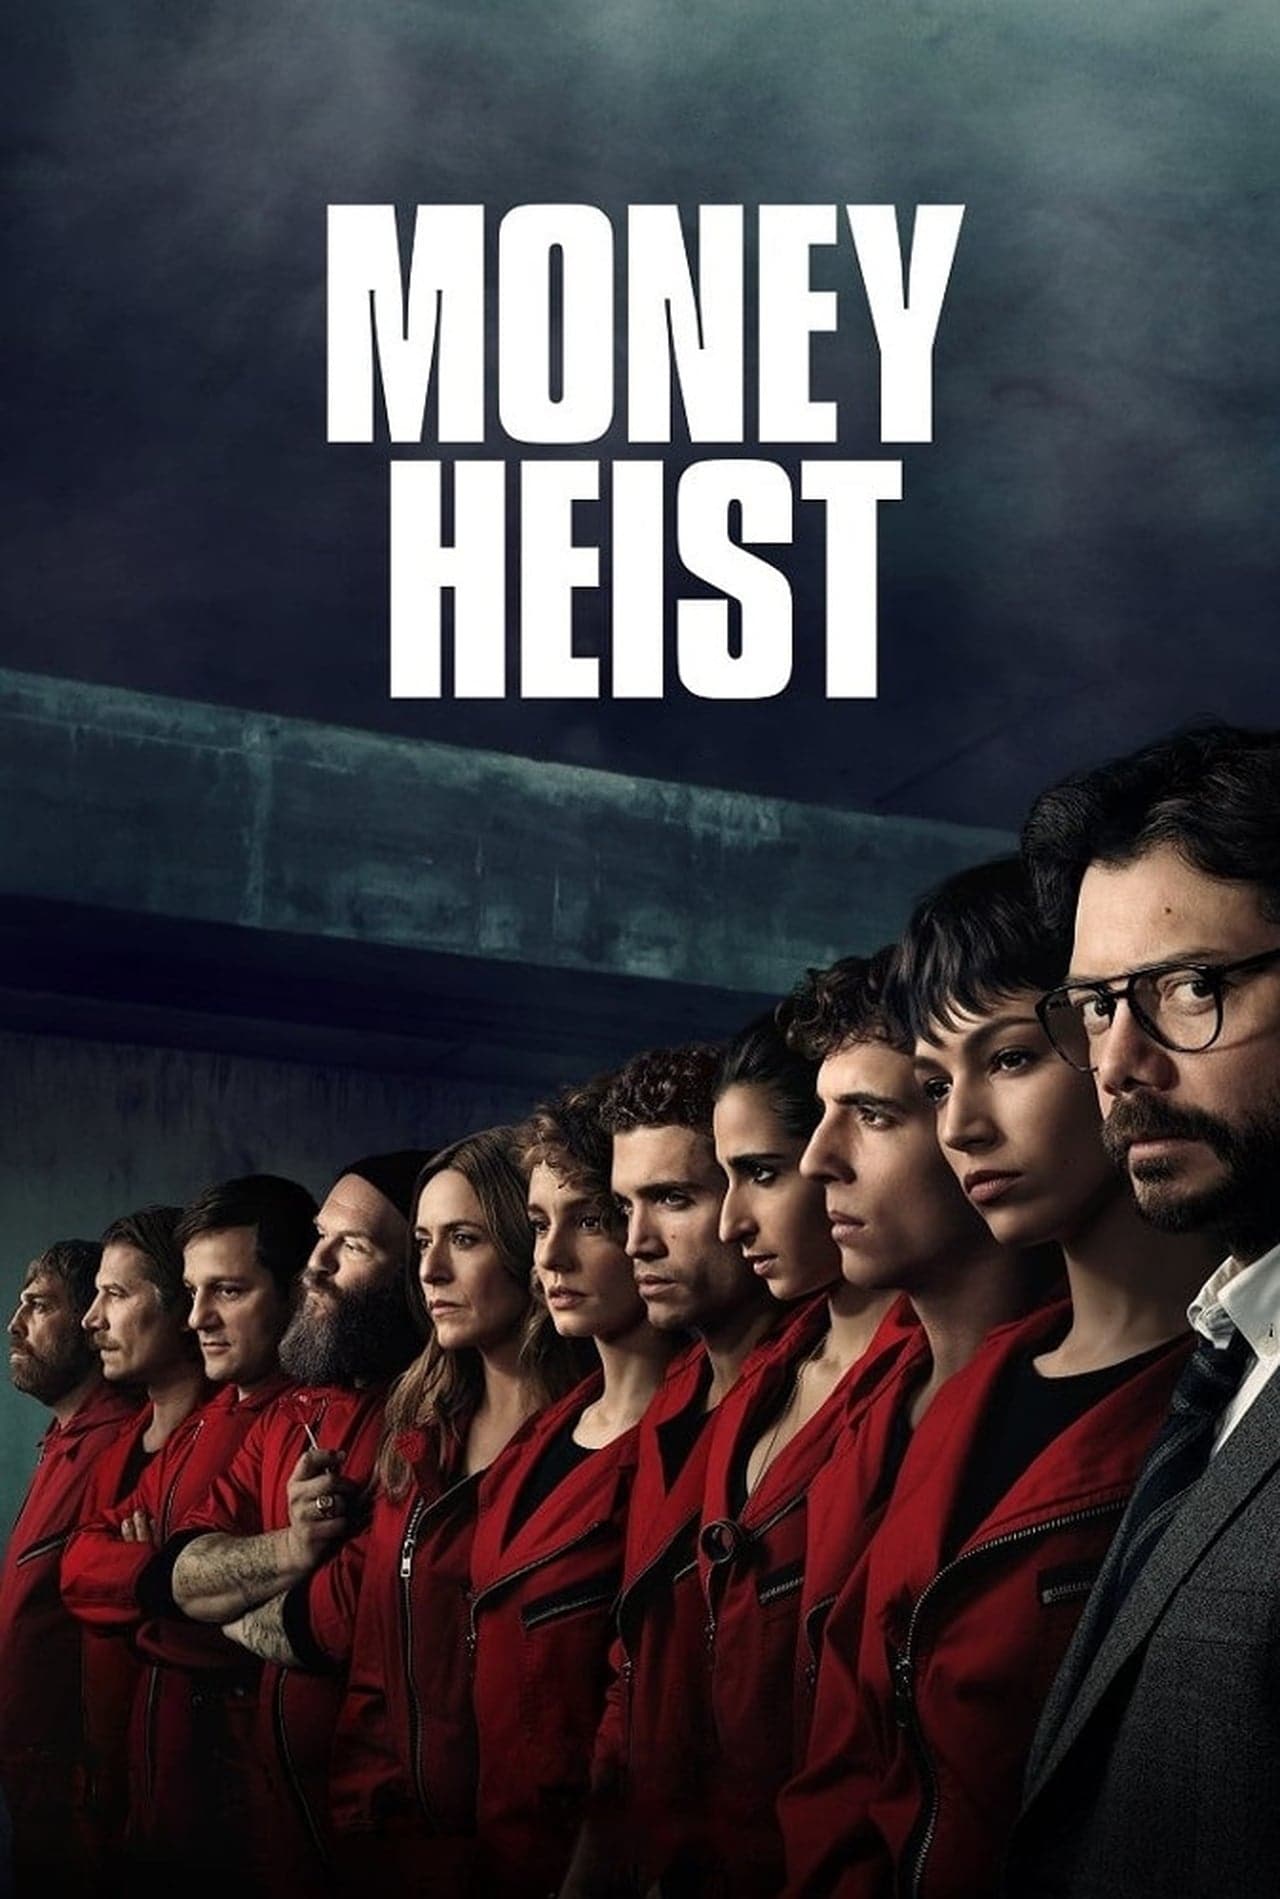 ดูซีรี่ย์ออนไลน์ Money Heist Season 3 ทรชนคนปล้นโลก 3 Ep1-8(จบ) ซับไทย ดูซีรี่ย์ Netflix ฟรี